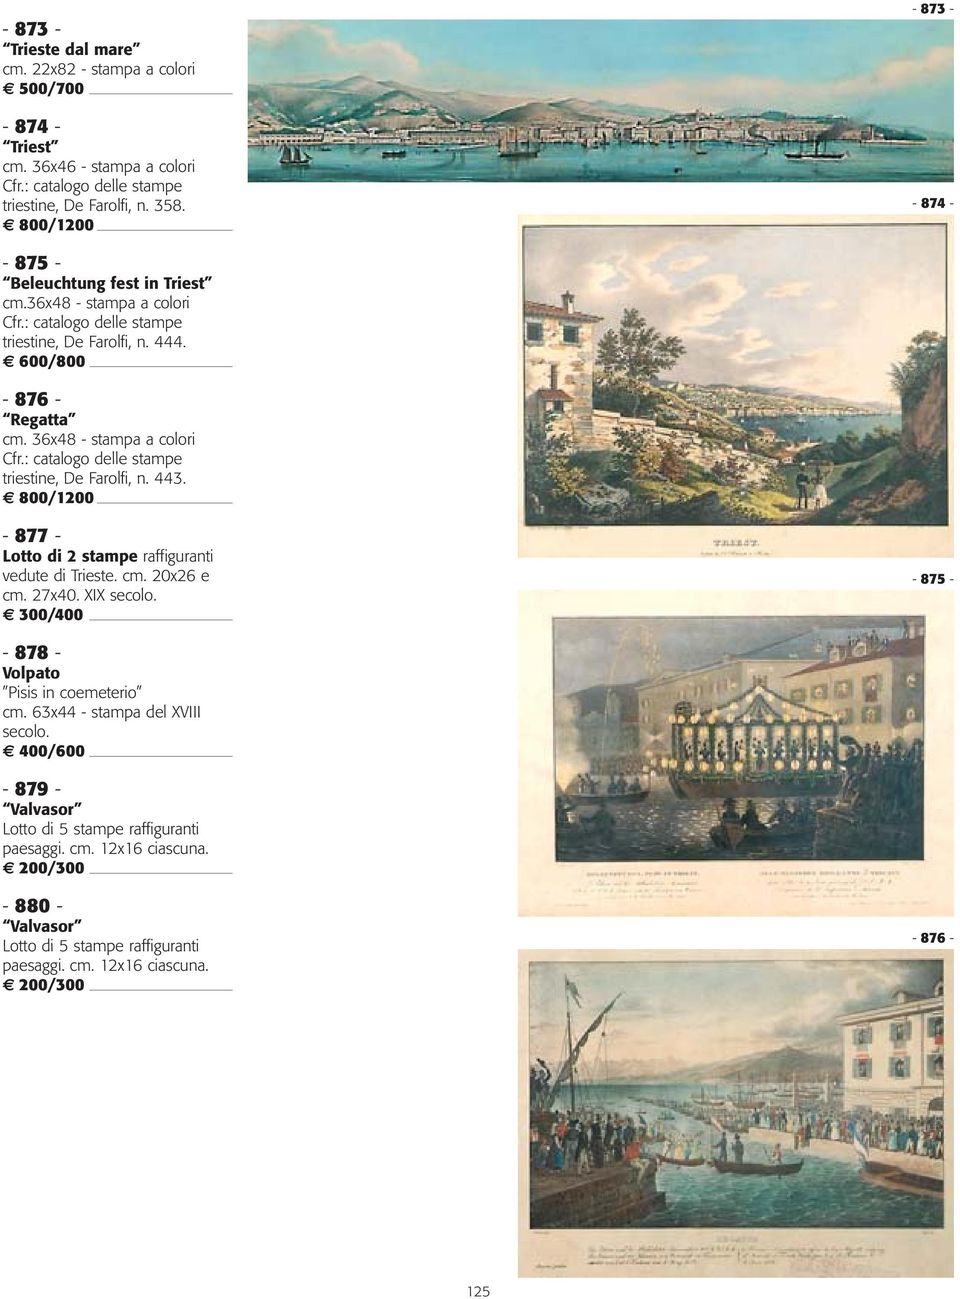 36x48 - stampa a colori triestine, De Farolfi, n. 443. 800/1200-877 - Lotto di 2 stampe raffiguranti vedute di Trieste. cm. 20x26 e cm. 27x40. XIX secolo.